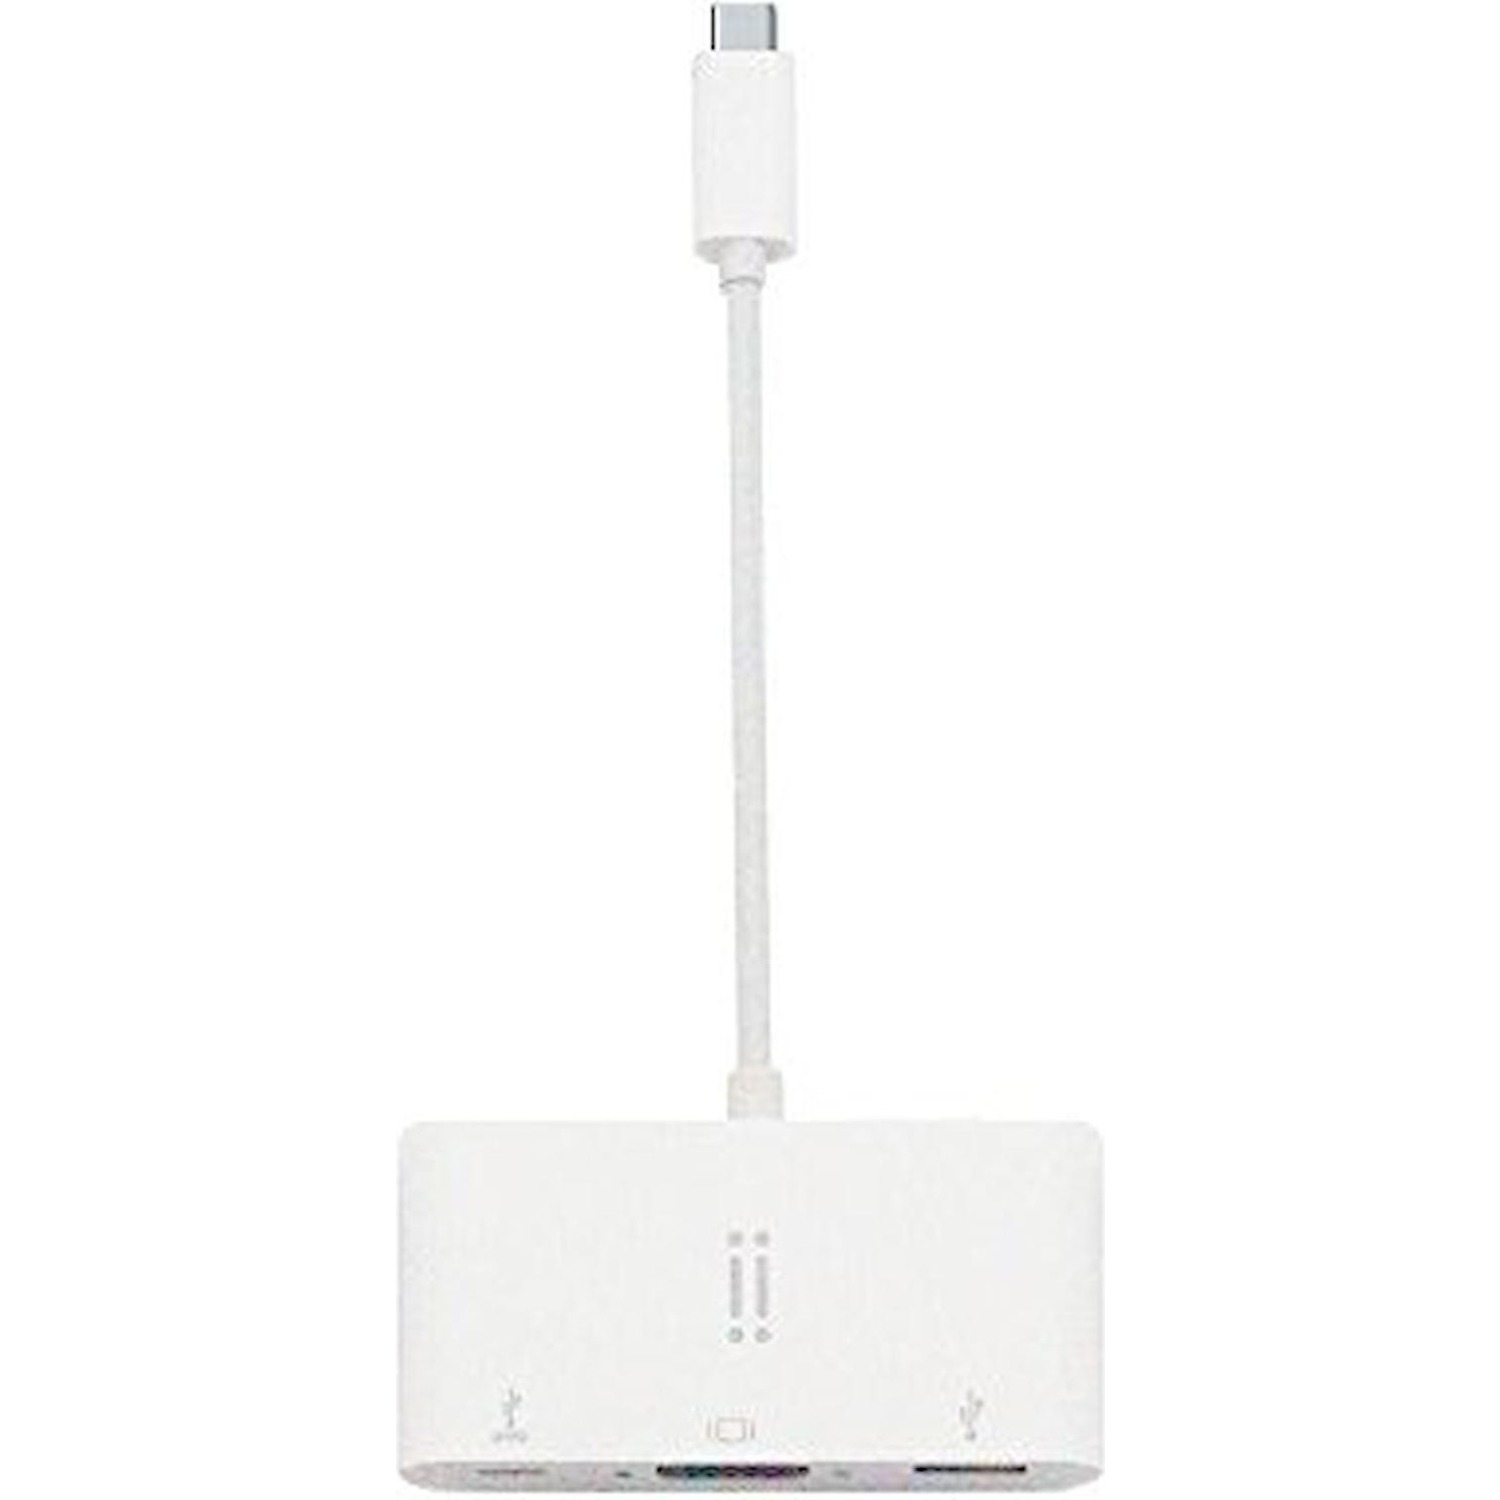 Immagine per Adattatore da USB a VGA + USB 3.0 + Type C Data   per MacBook bianco da DIMOStore